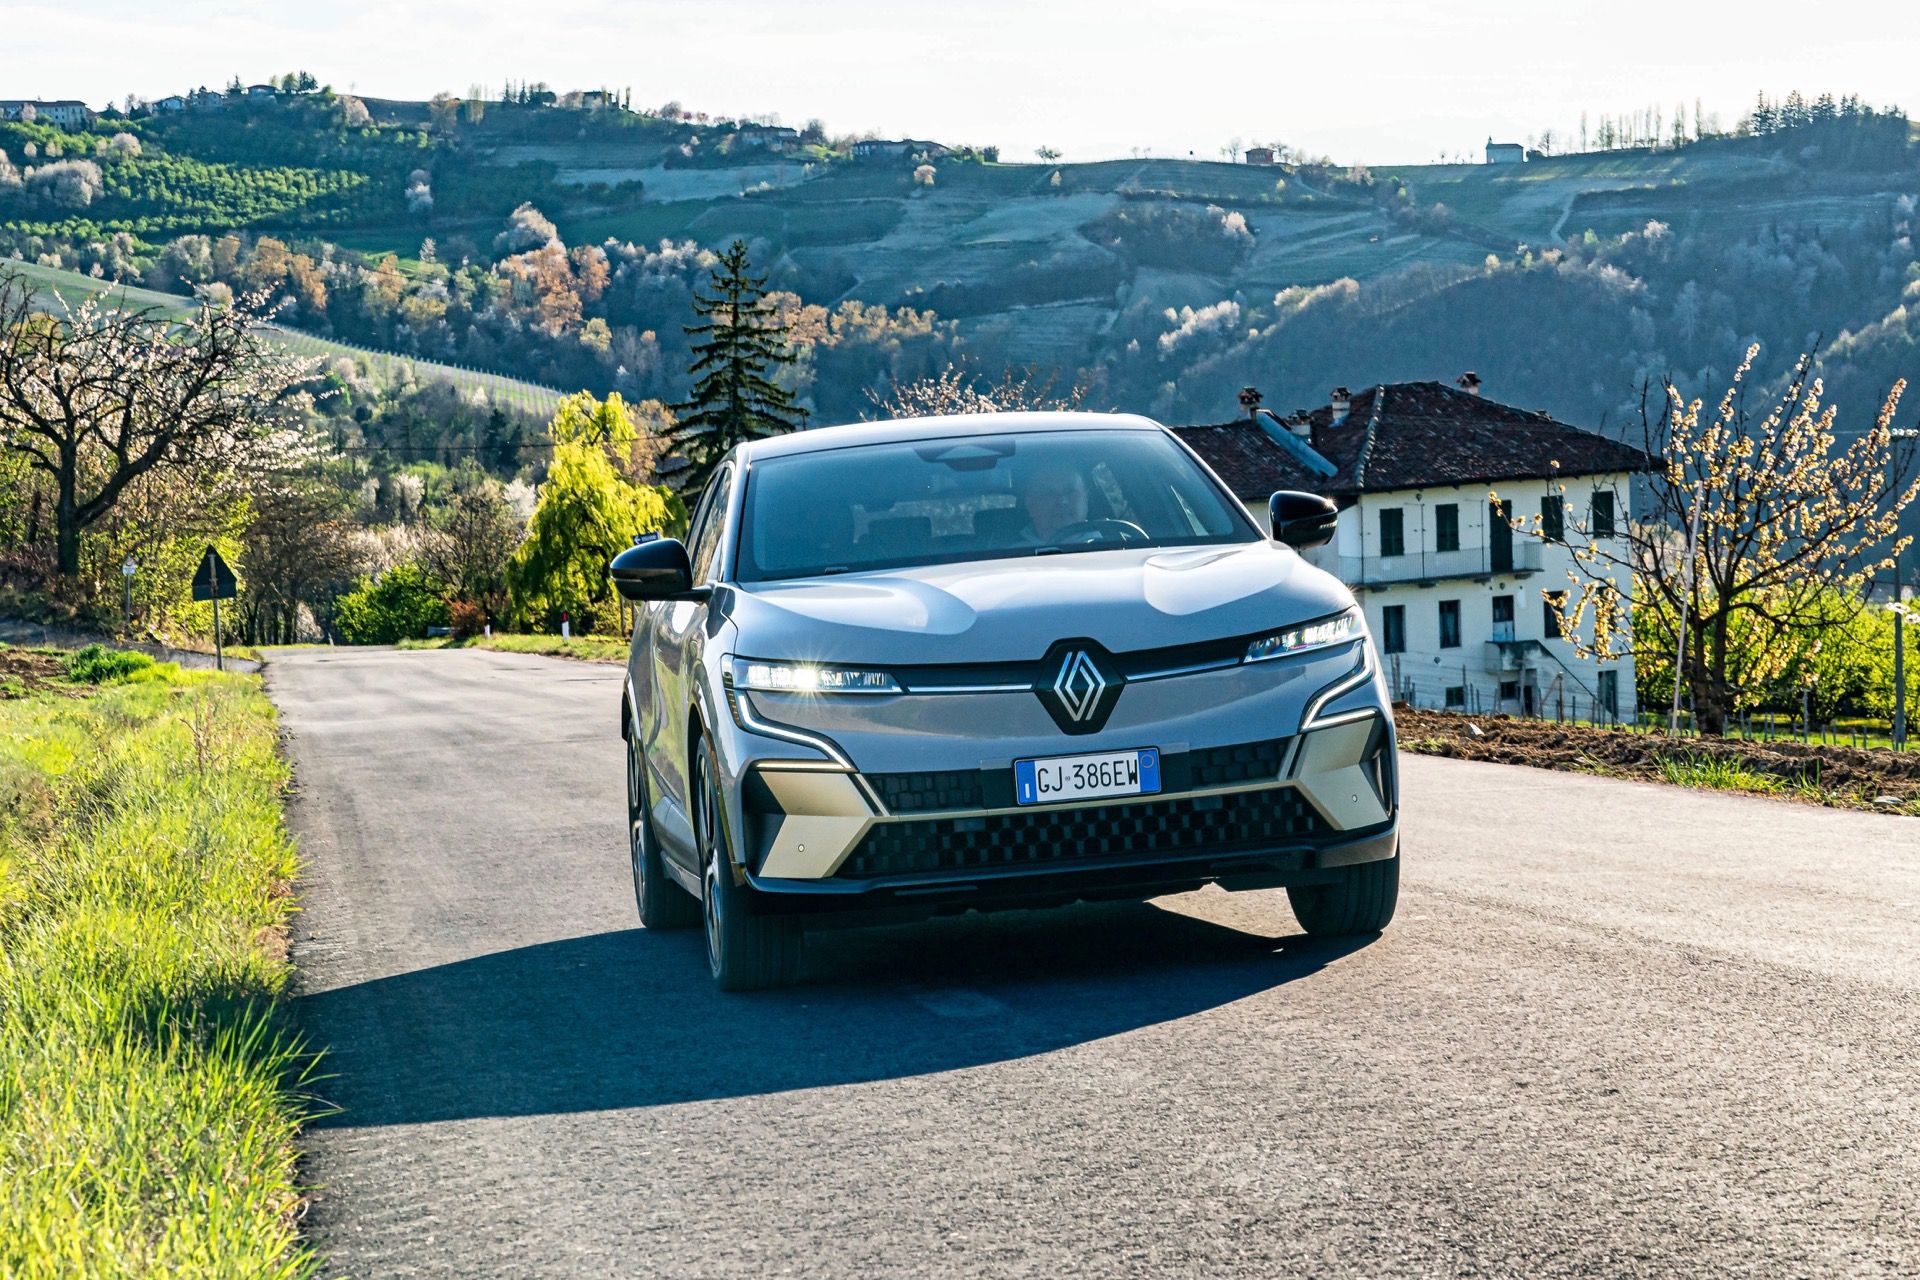 Renault-Mégane-E-Tech-Electric